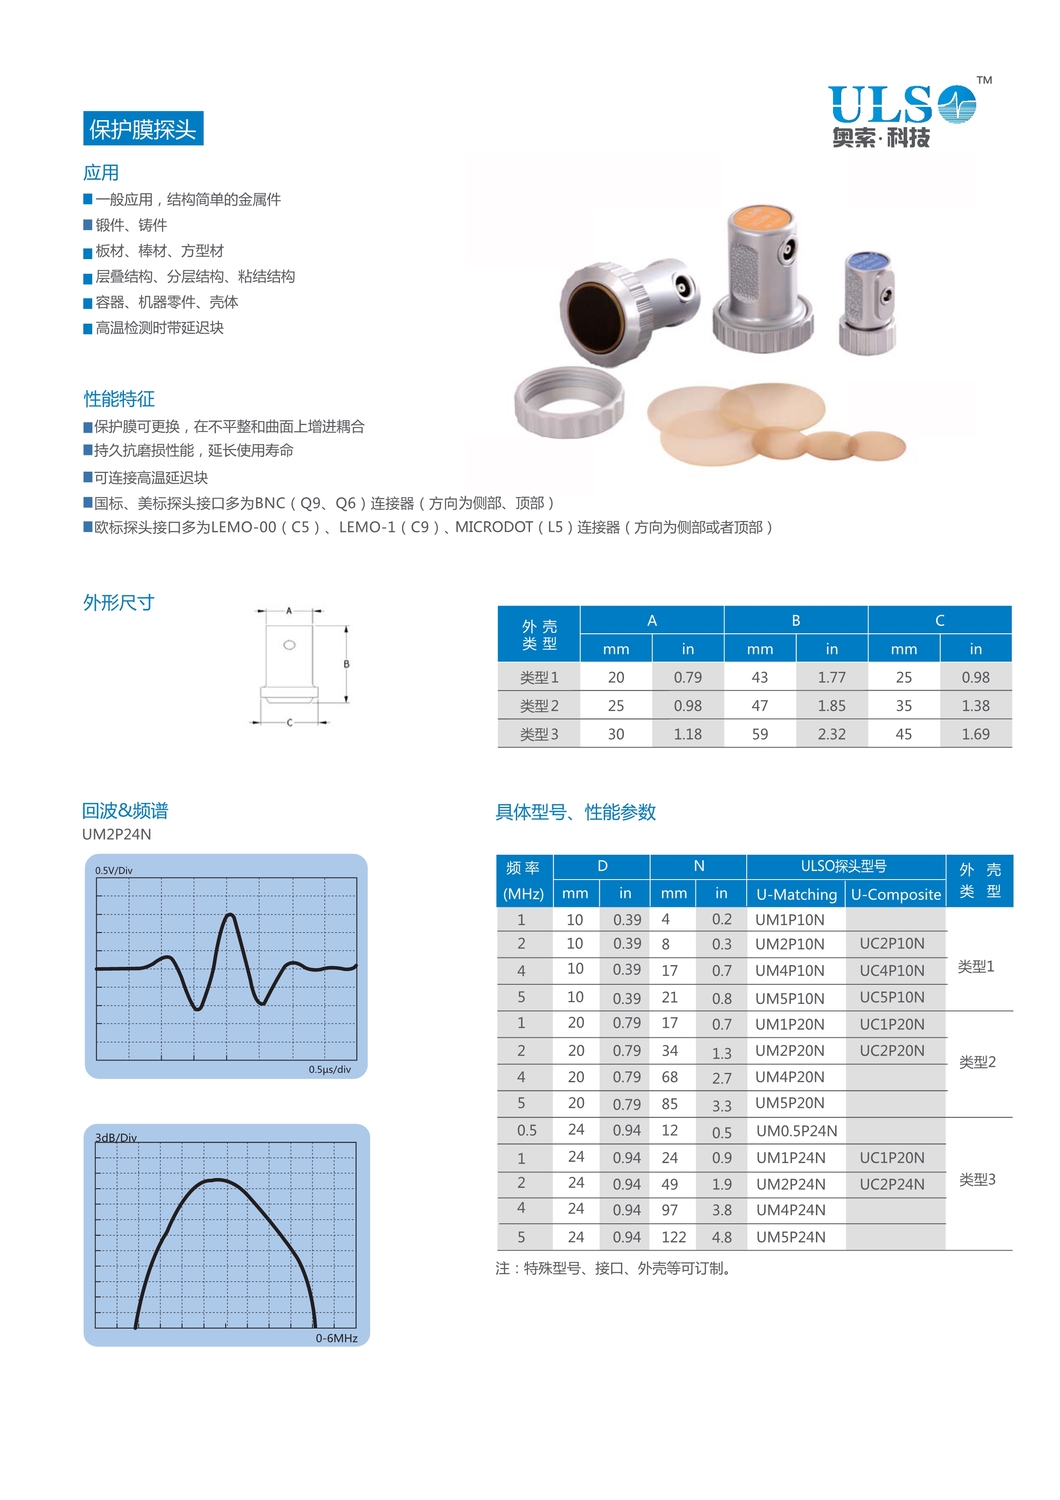 ULSO科技-工业常规产品手册180601_9.jpg